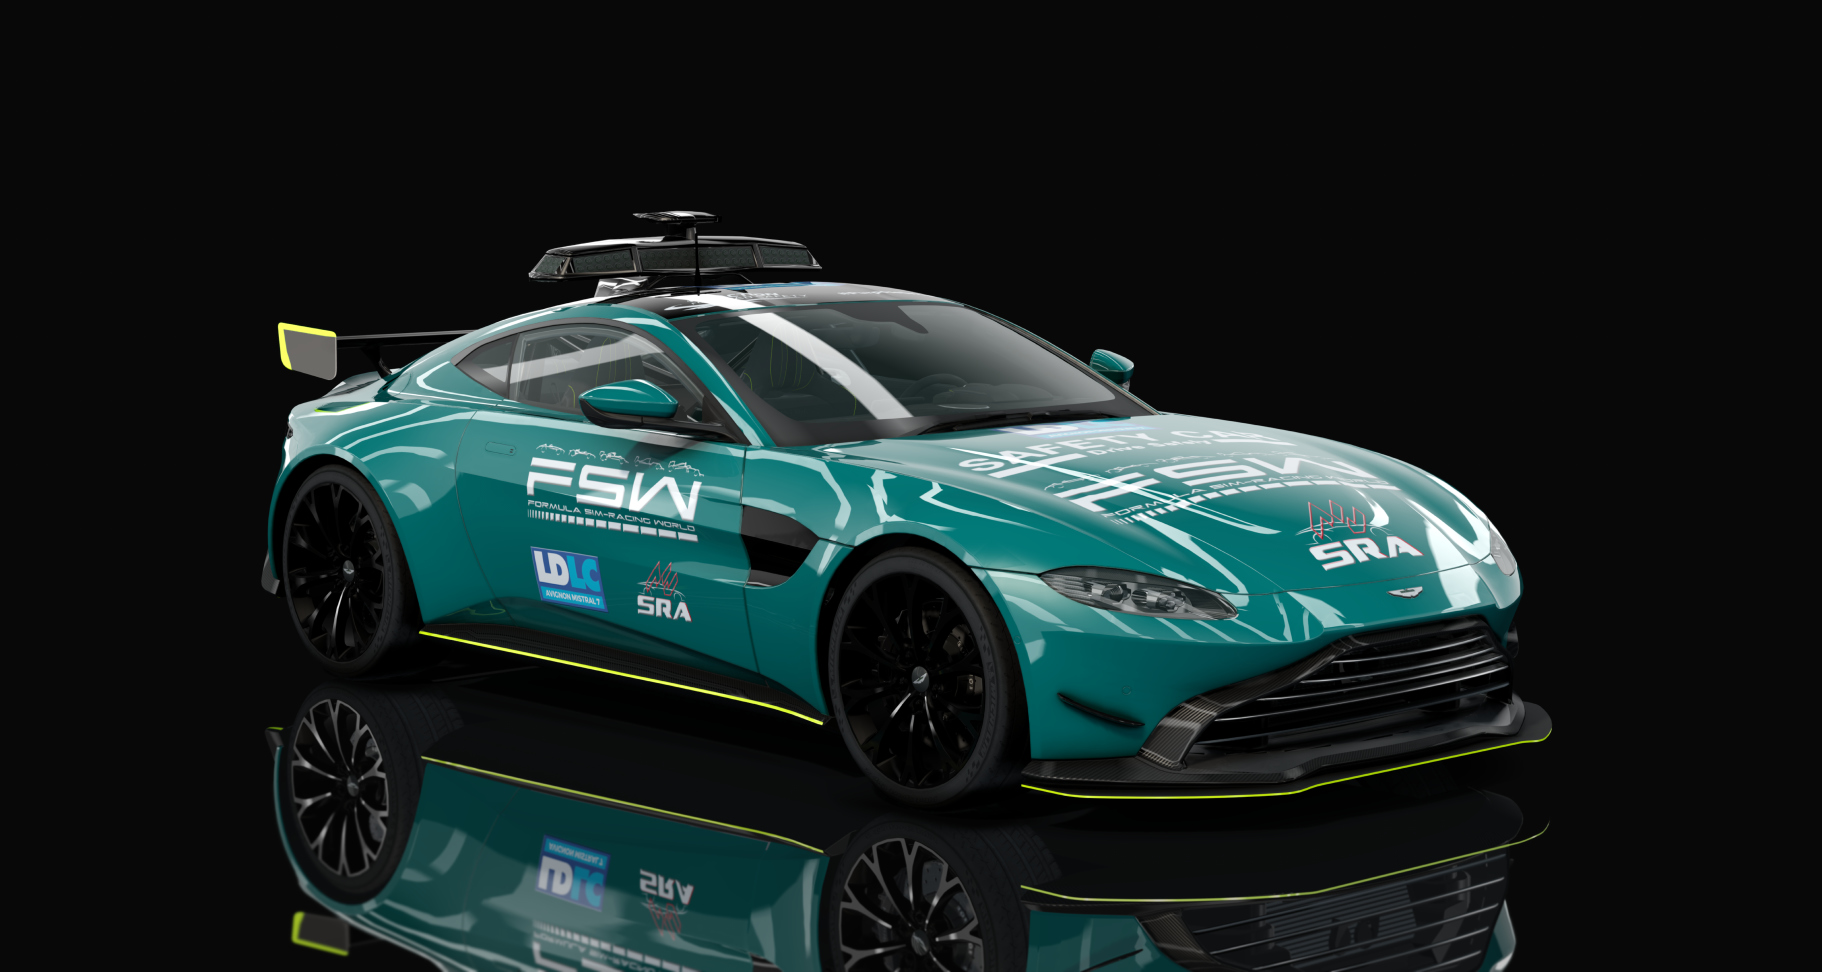 Aston Martin Vantage safety car Nov'Angel, skin FSW